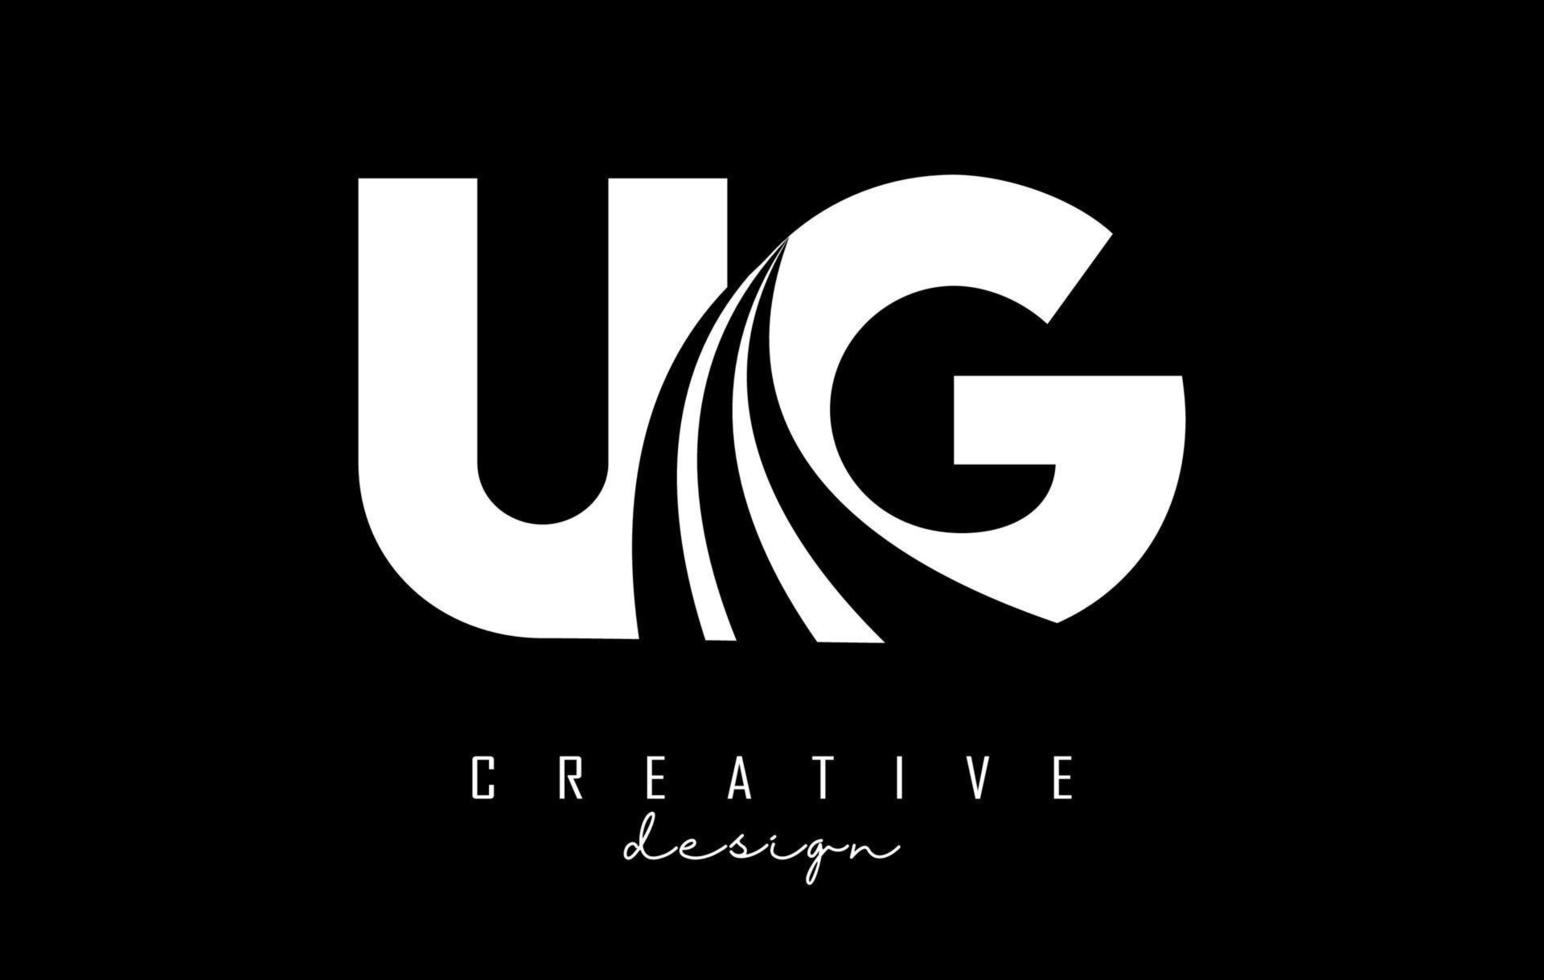 kreative weiße buchstaben ug ug logo mit führenden linien und straßenkonzeptdesign. Buchstaben mit geometrischem Design. vektor